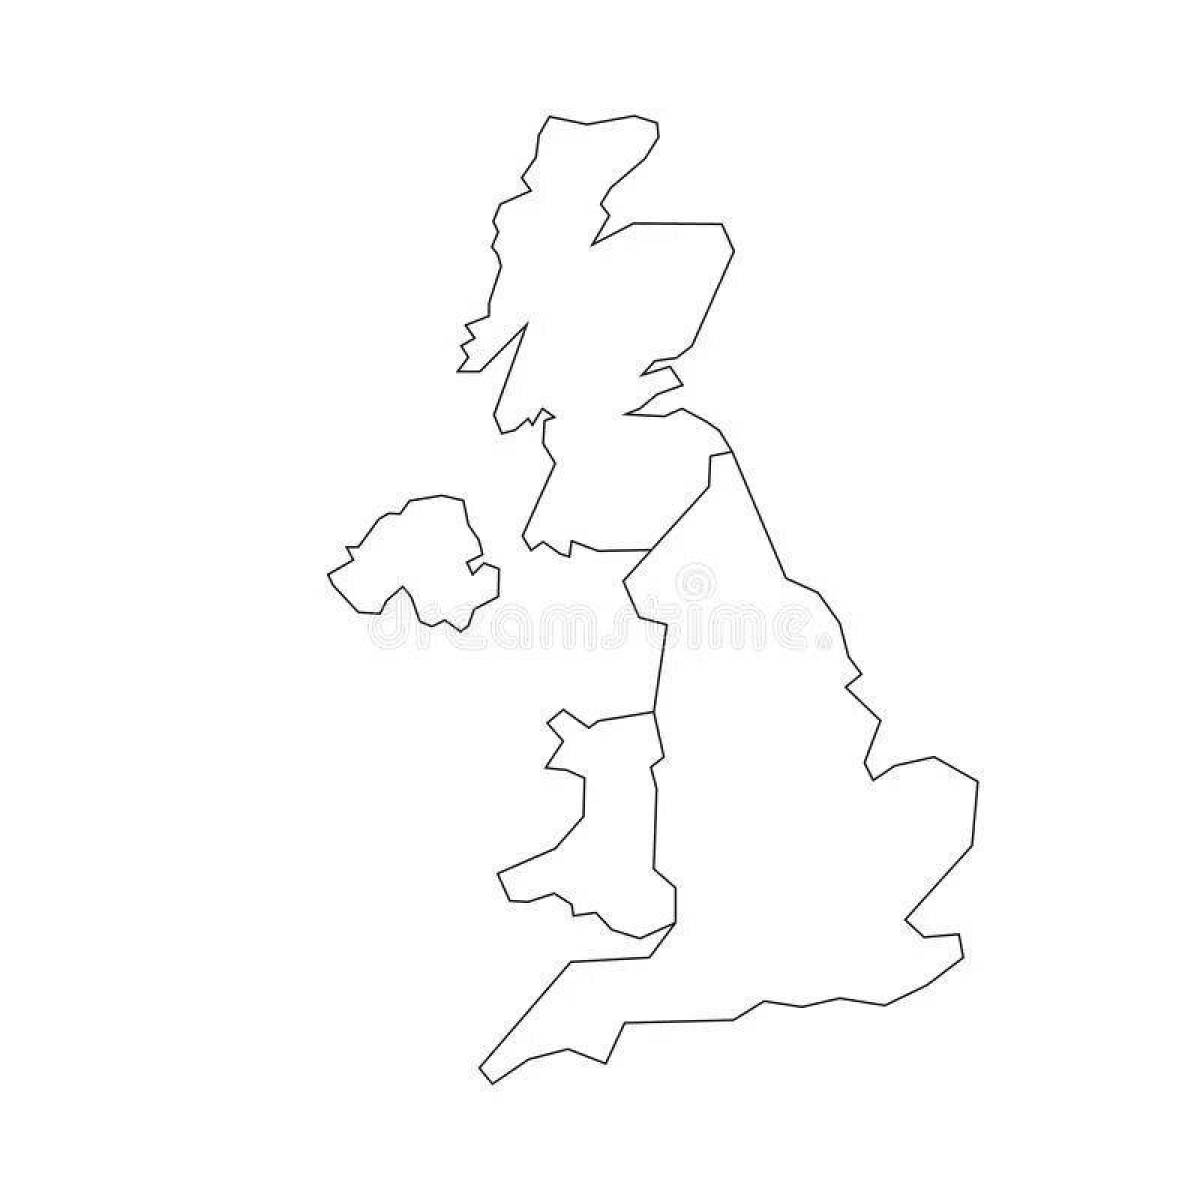 Фото Вдохновляющая раскраска карты великобритании